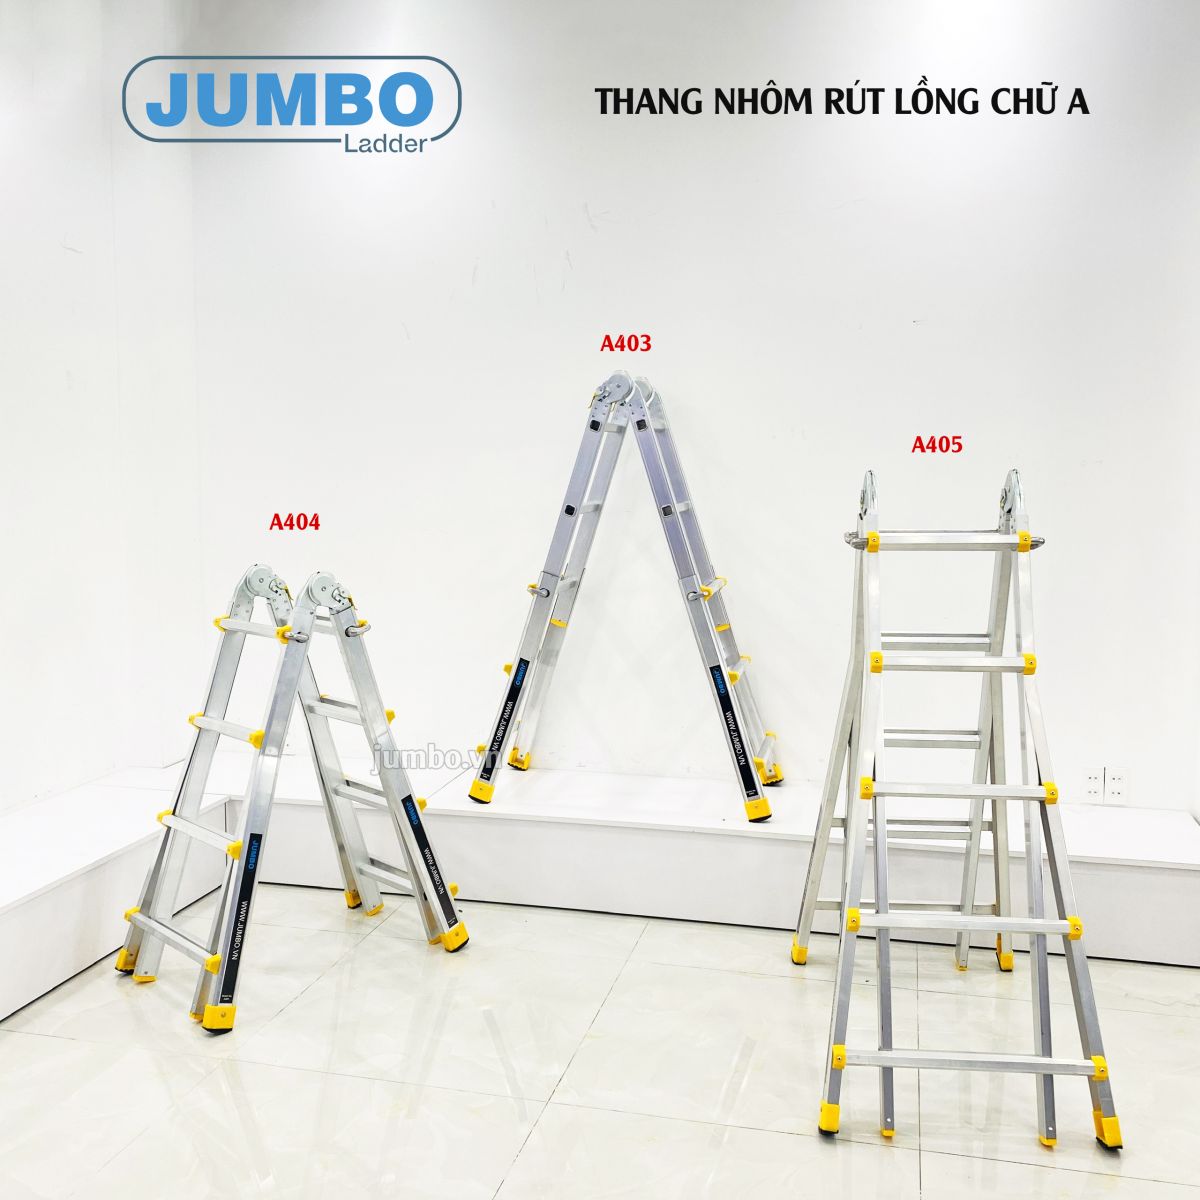 Thang nhôm gấp chữ A mở rộng Jumbo A405